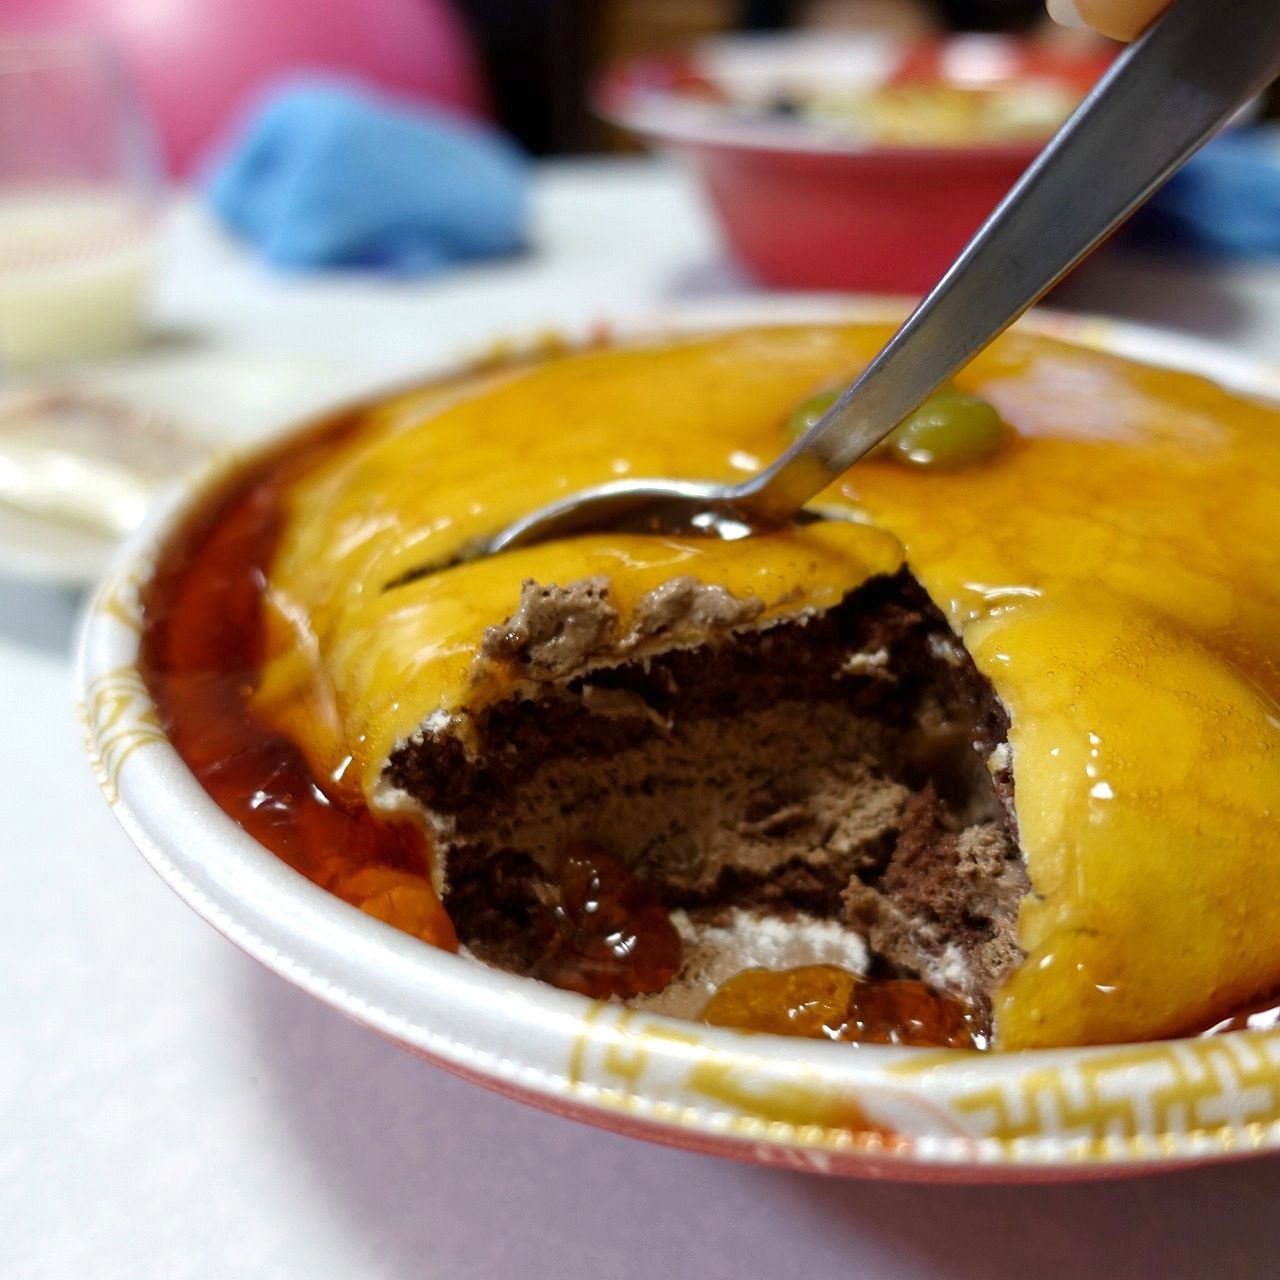 スイパラでそっくりケーキをお取り寄せ@駅前食堂 ラーメン+天津飯+ギョウザ セット - 大阪・奈良グルメのブログ「ミシュランごっこ。」